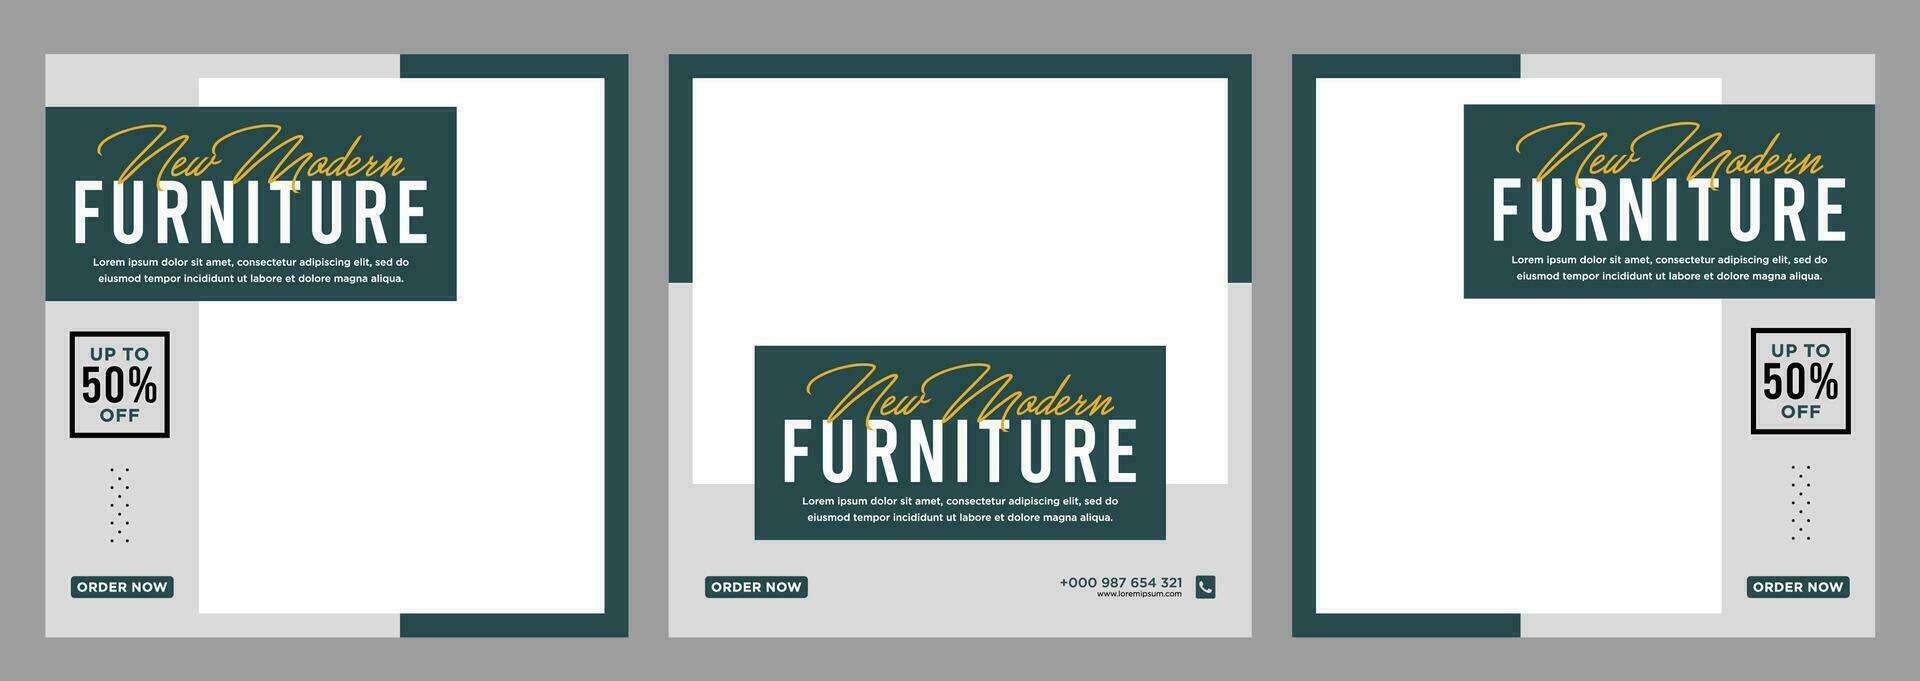 minimalistische meubilair uitverkoop banier of sociaal media of banier sjabloon vector